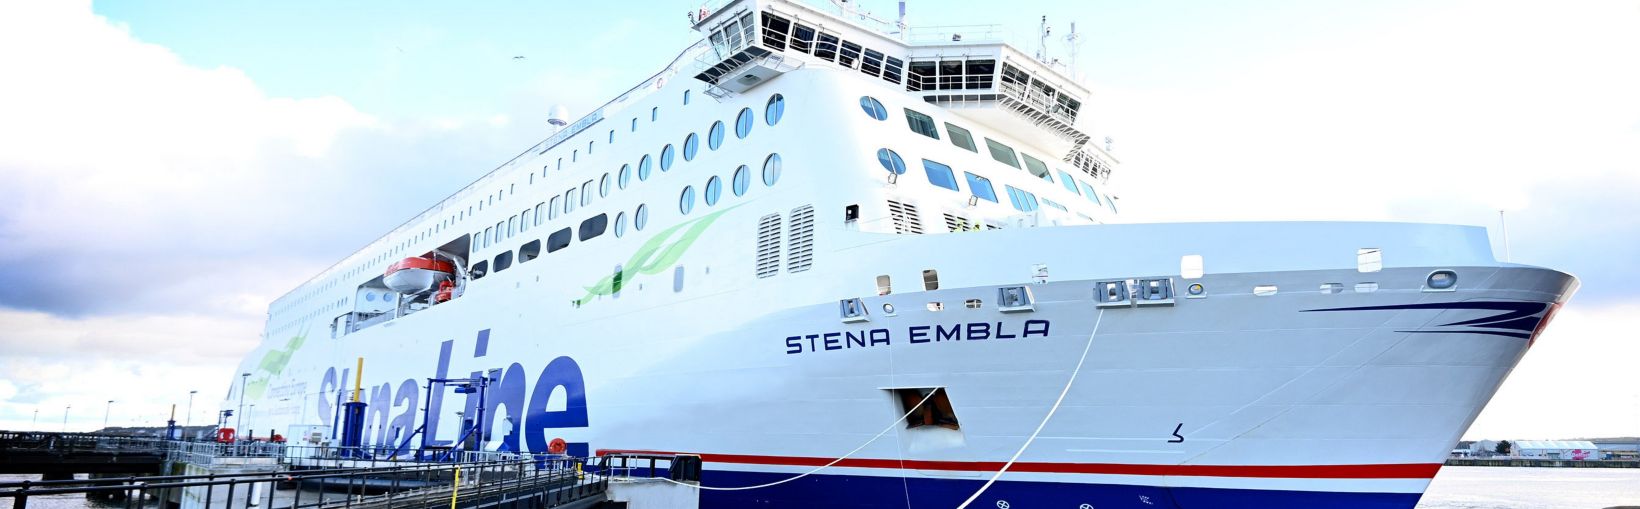 Stena Embla veerboot aangemeerd in de haven van Liverpool